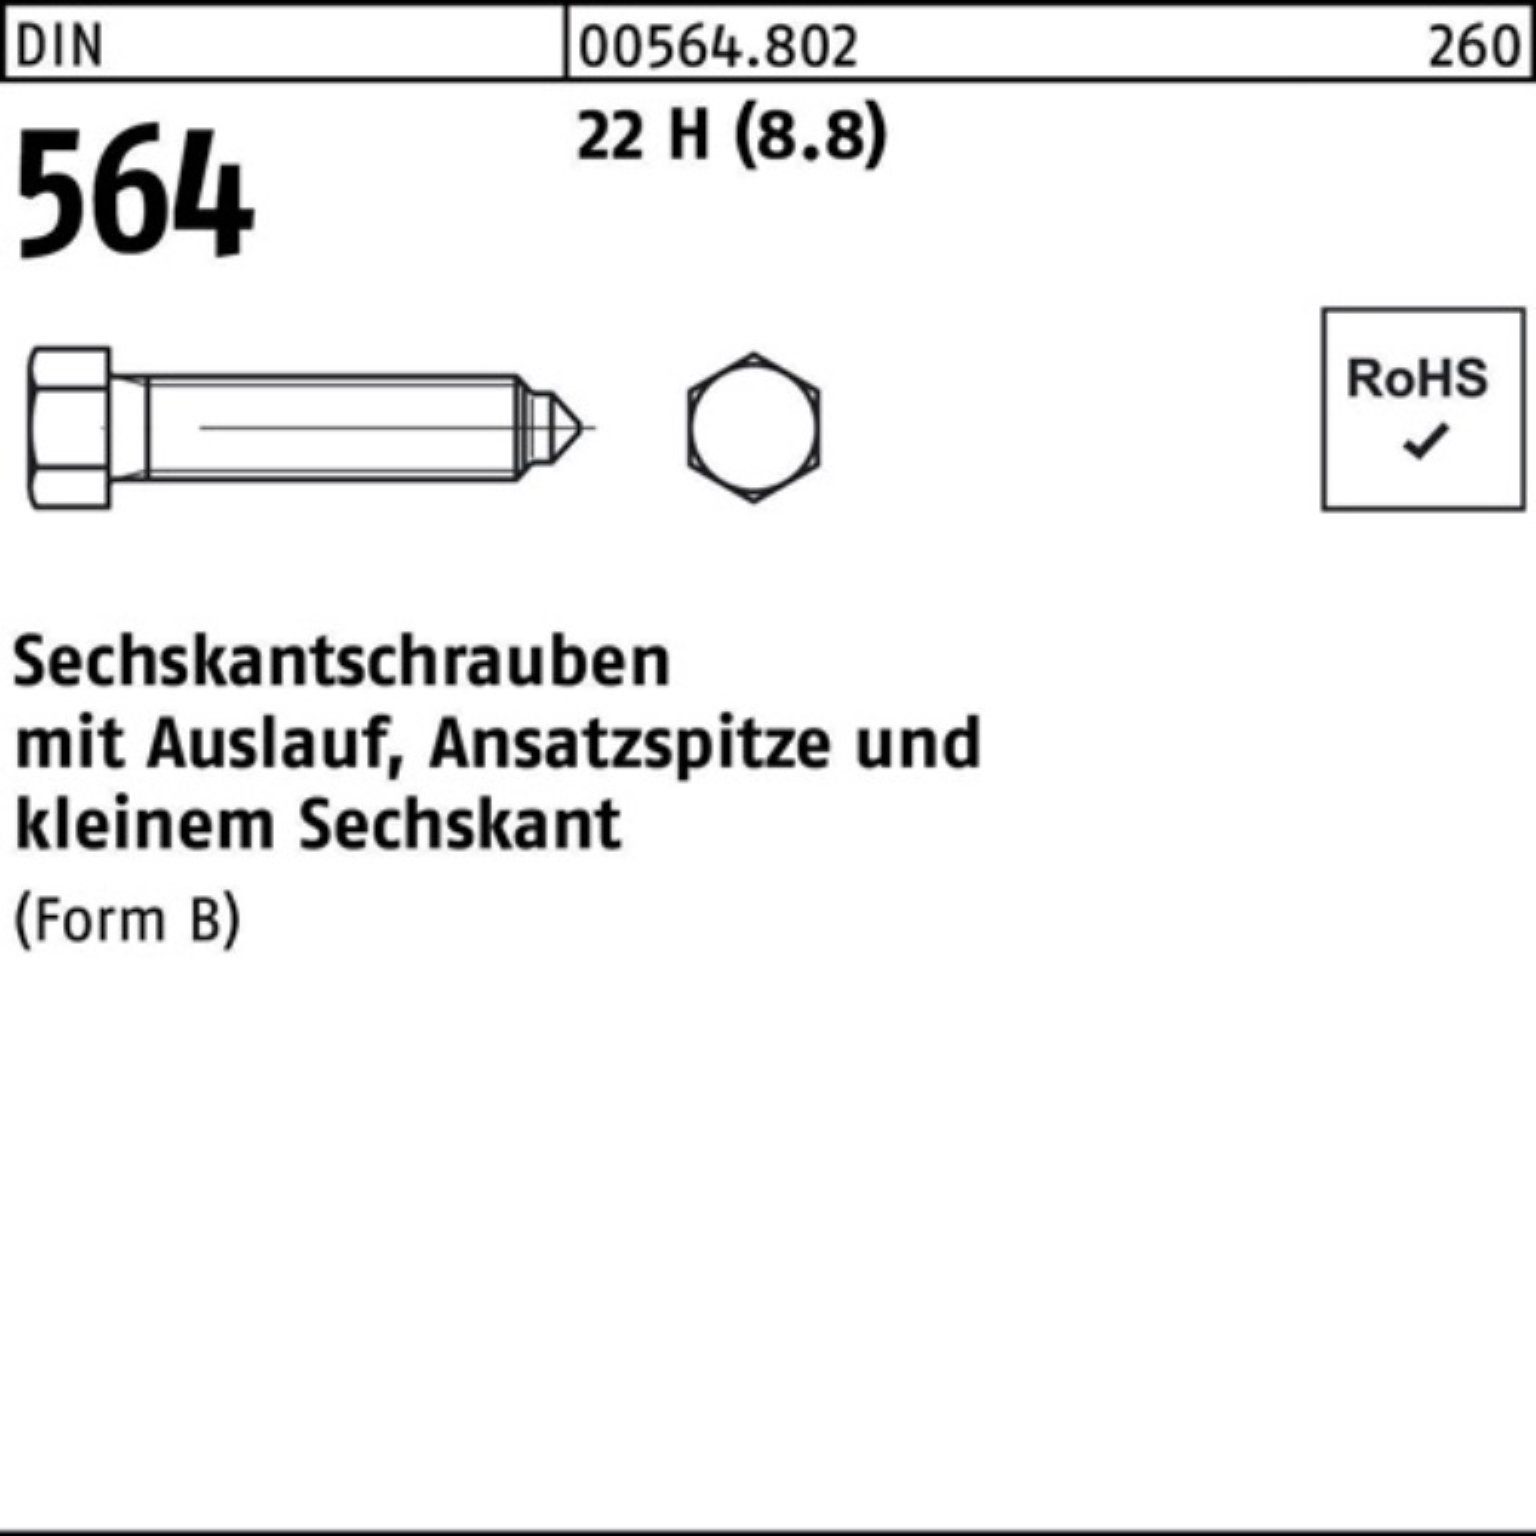 Reyher Sechskantschraube 100er 22 Sechskantschraube Pack Ansatzspitze/Auslauf 70 BM DIN 20x 564